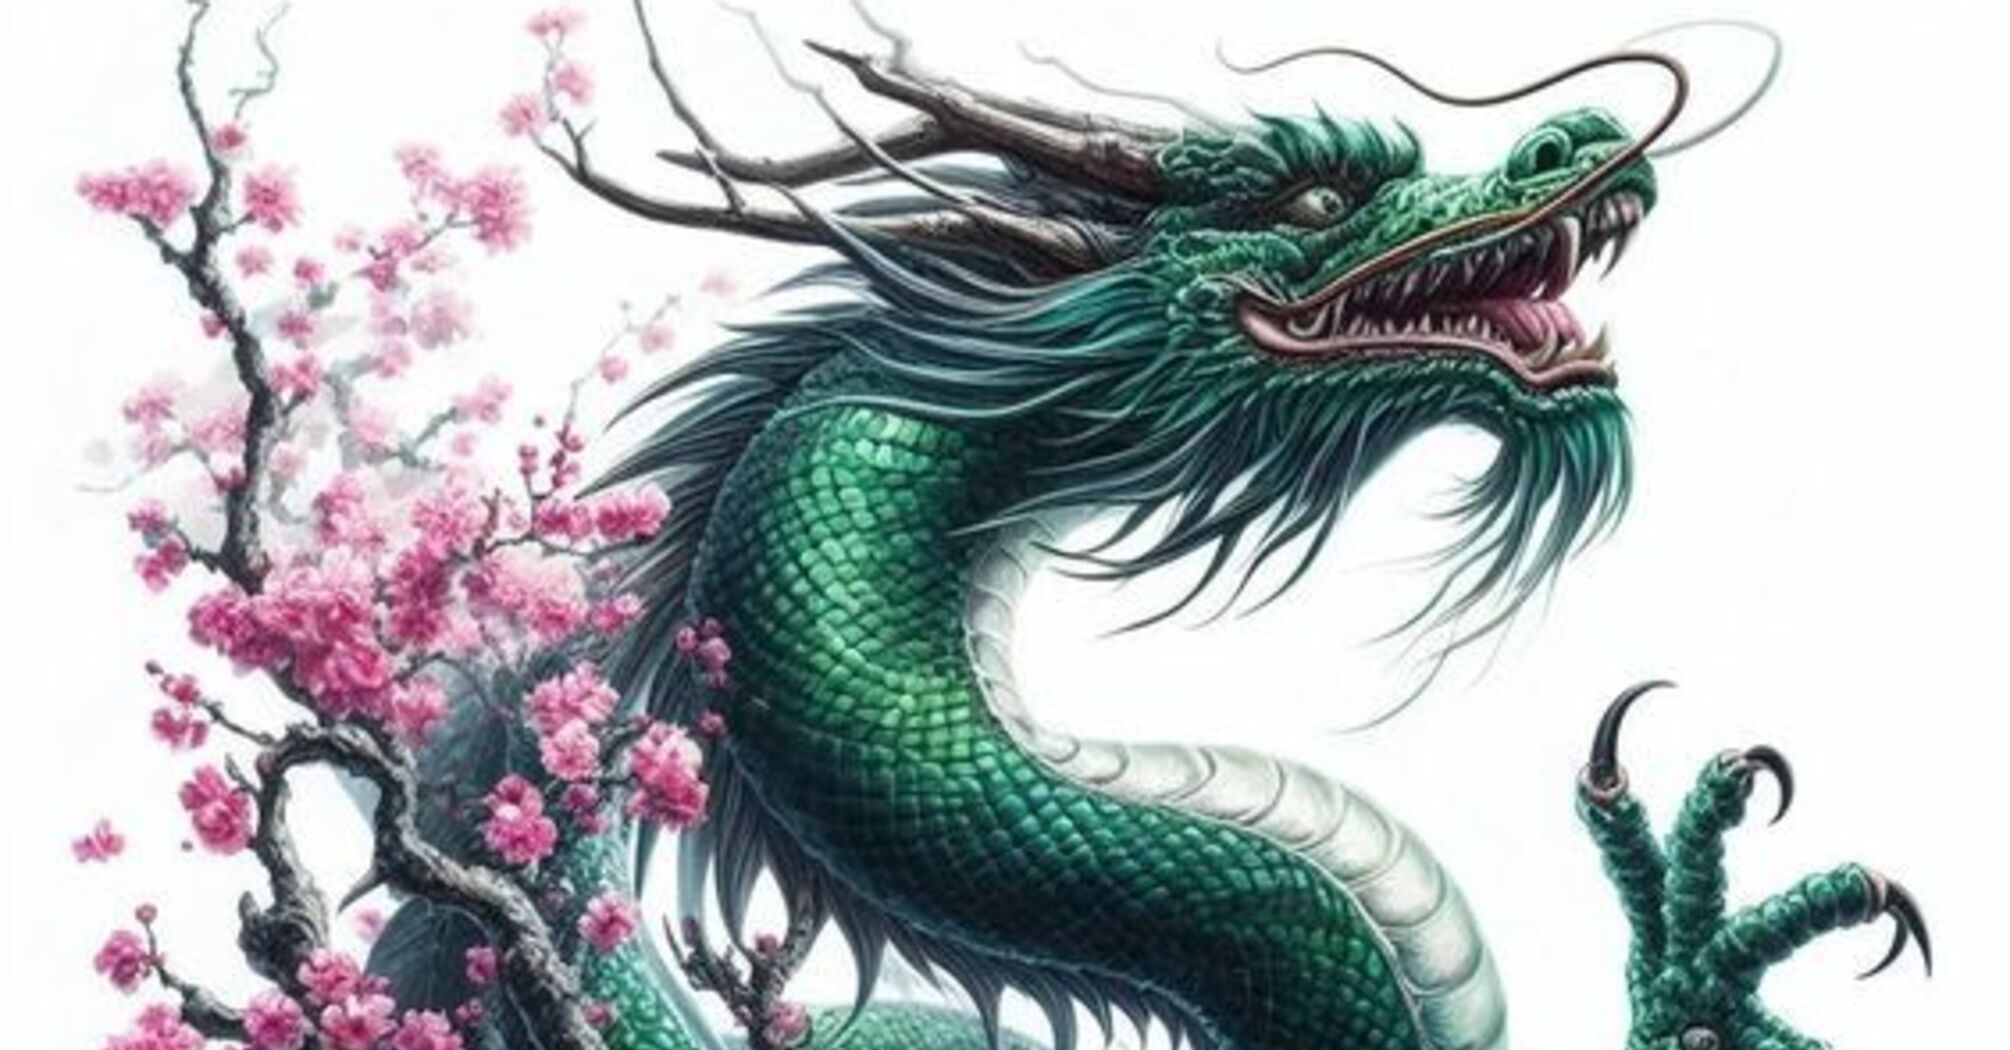 Доверьтесь интуиции и идите на взвешенные риски: китайский гороскоп на 25 февраля